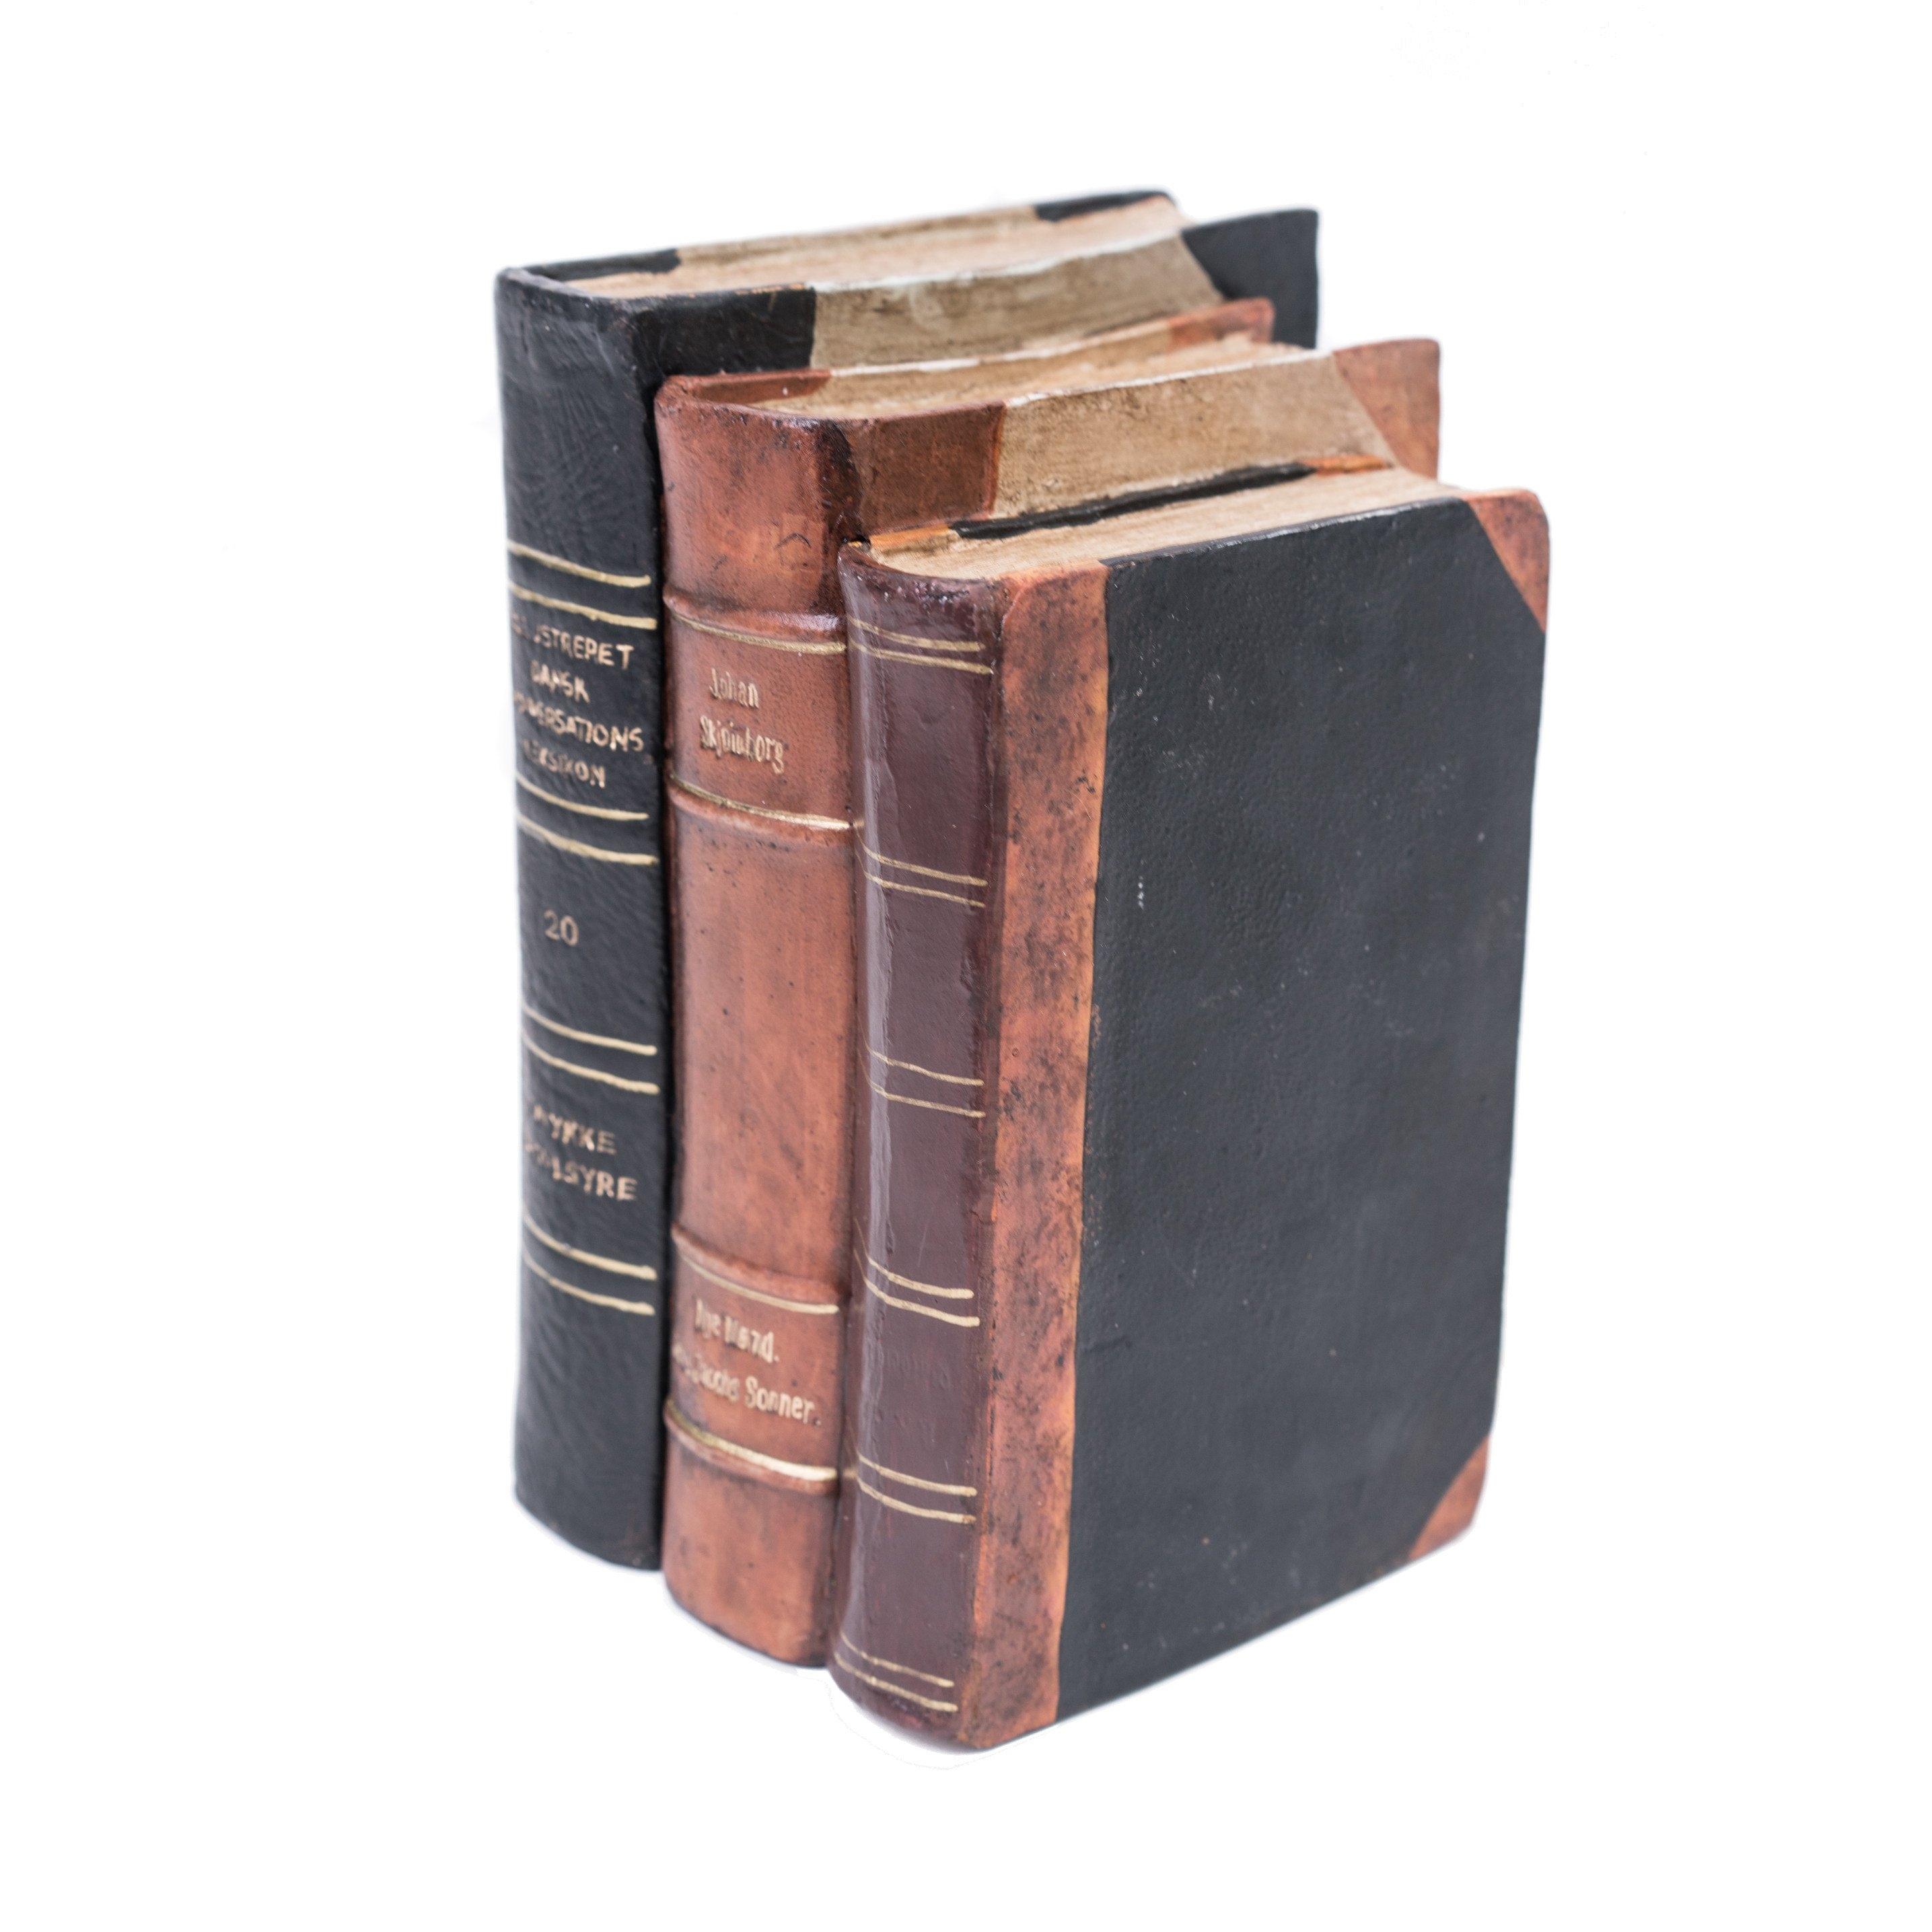 Sculpture Medium Size Antique Book Block